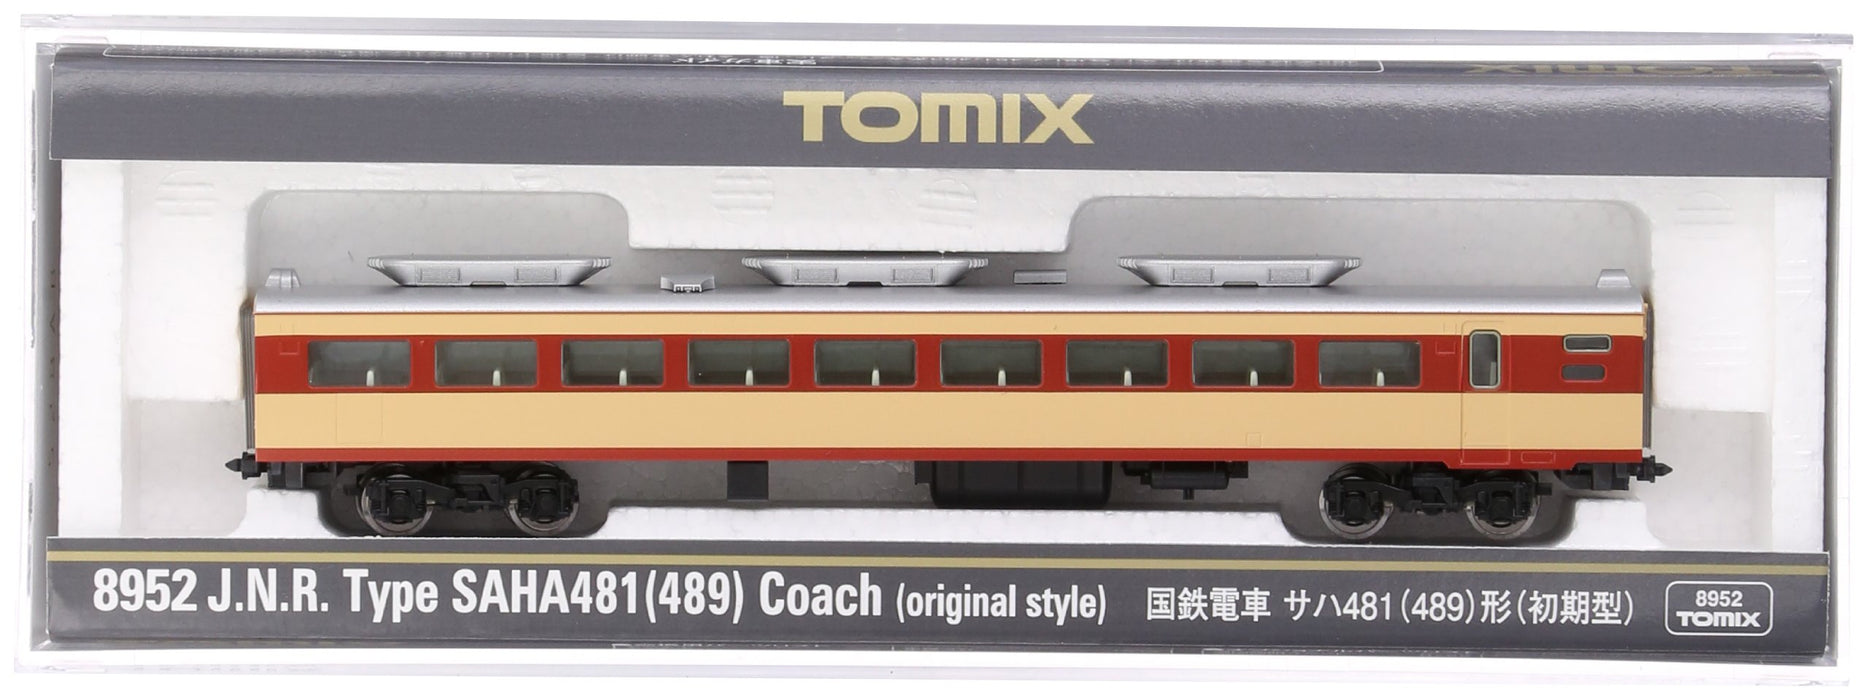 Tomytec Tomix Premier modèle 489 Train ferroviaire à voie N - 8952 Saha 481